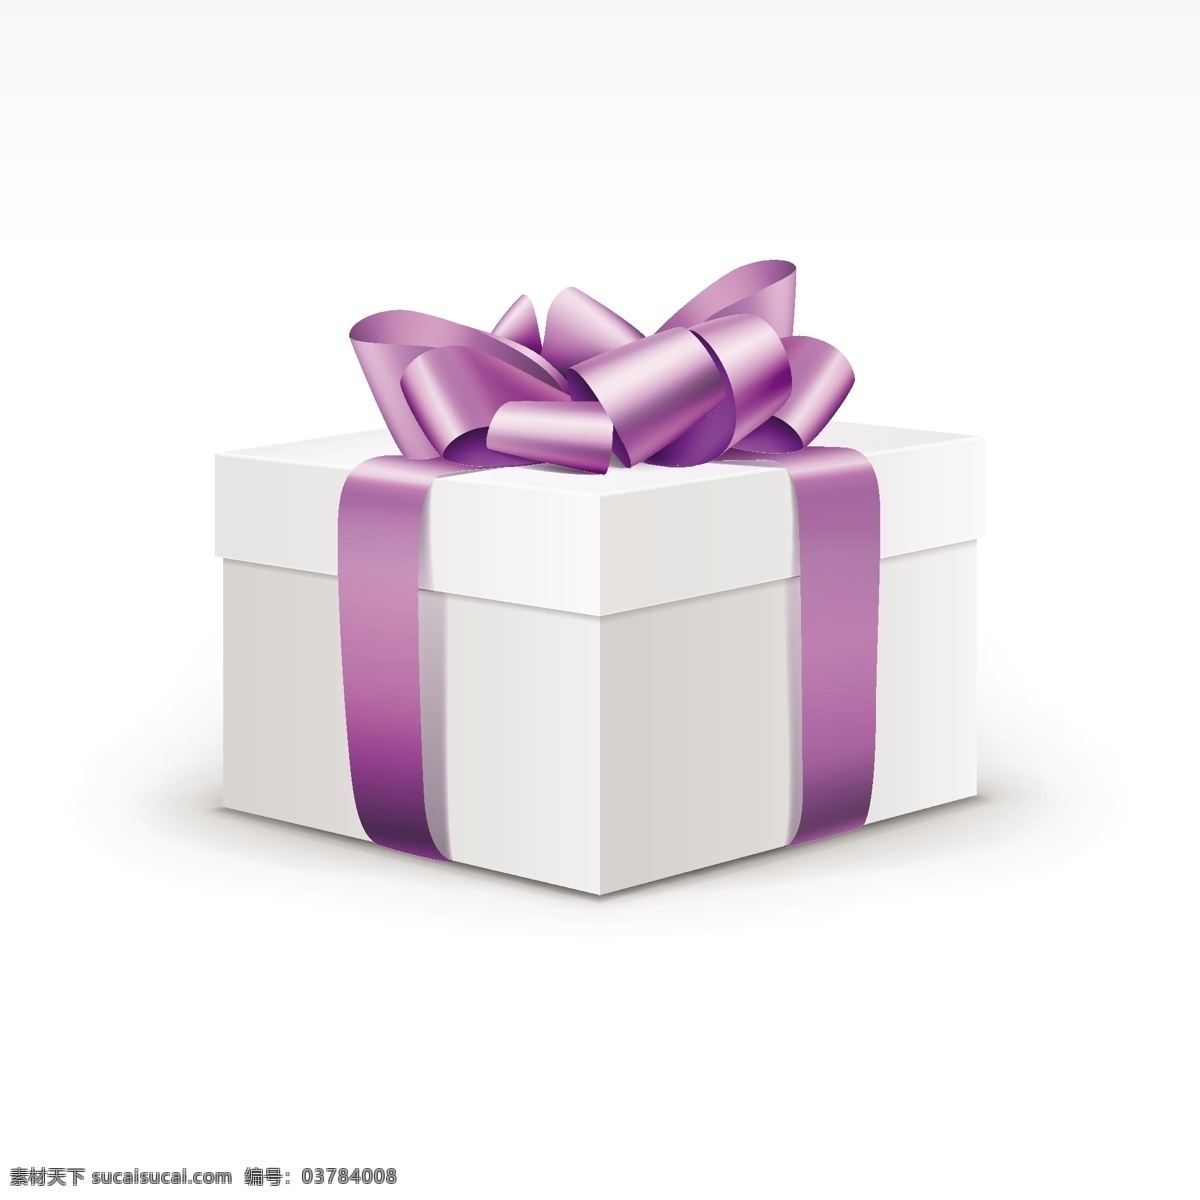 空白 紫色 缎带 礼品盒 包装 矢量 紫色缎带 白色礼品盒 超逼真 矢量礼品盒 文化艺术 节日庆祝